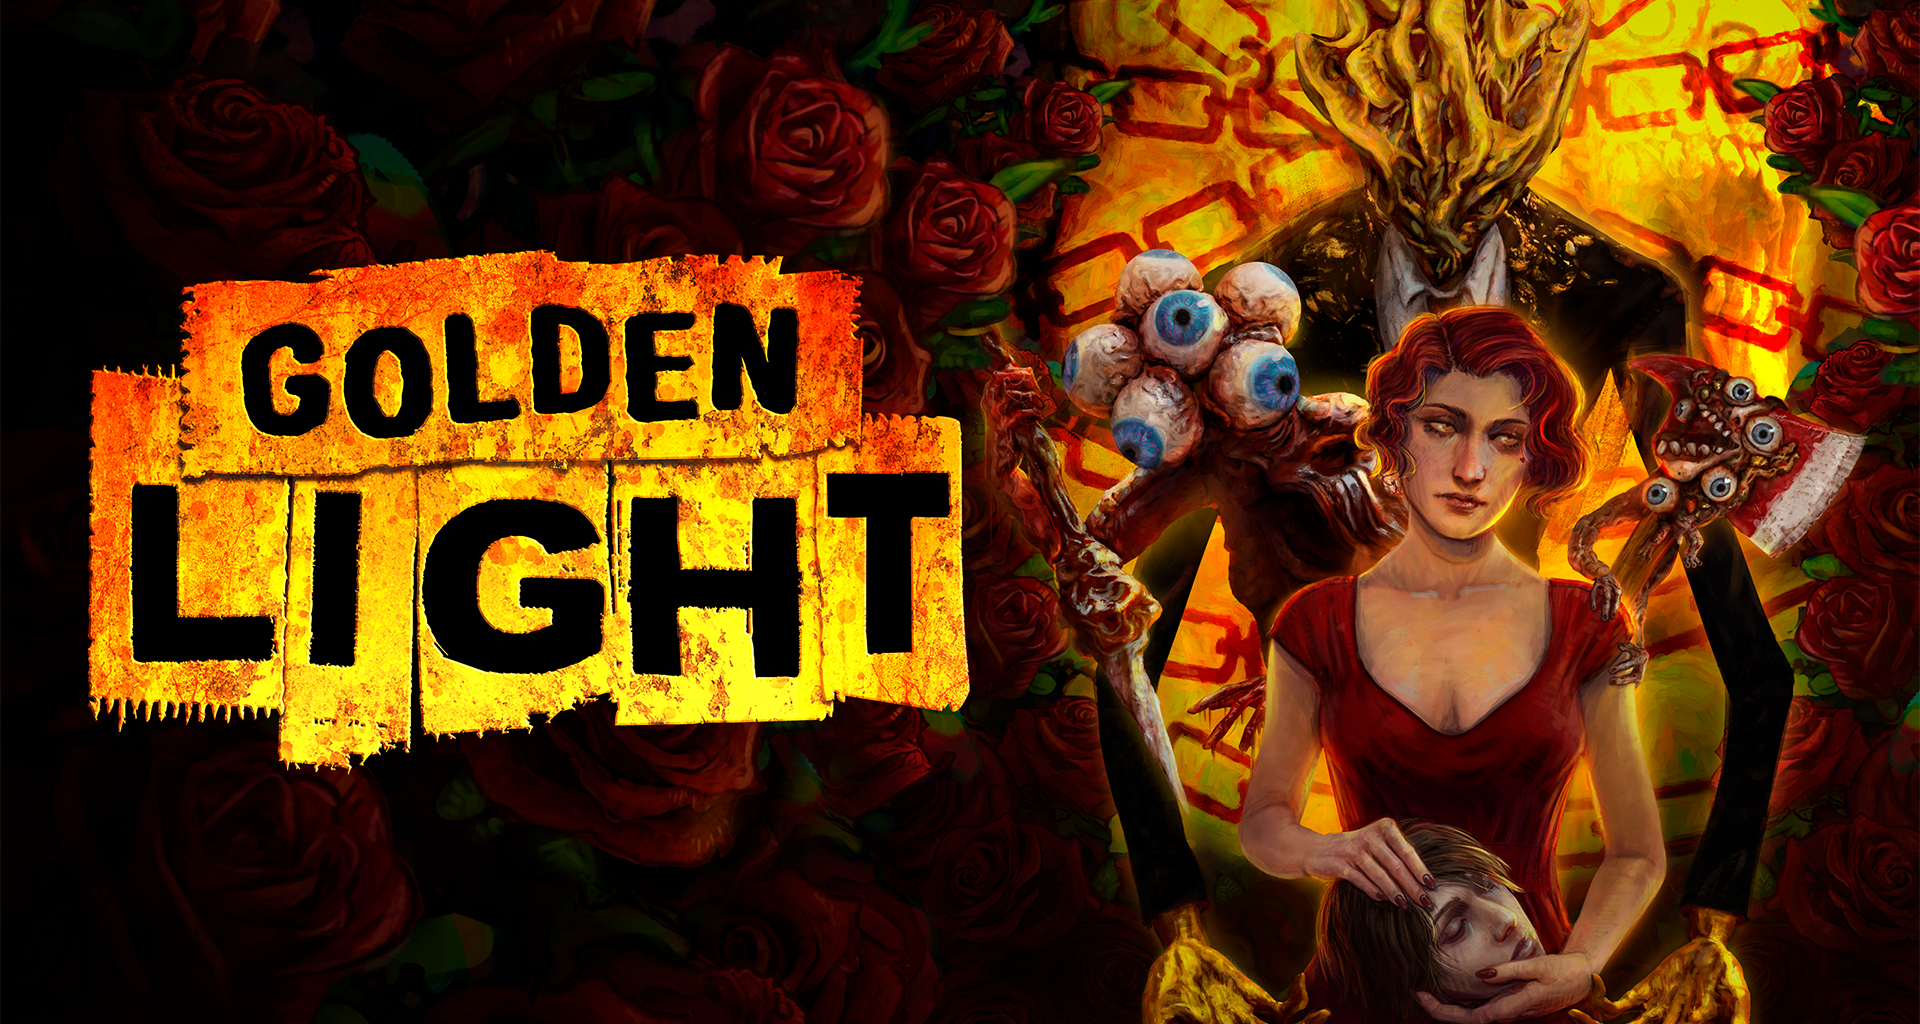 Epic Games ofrece gratis Golden Light, un Shooter de terror